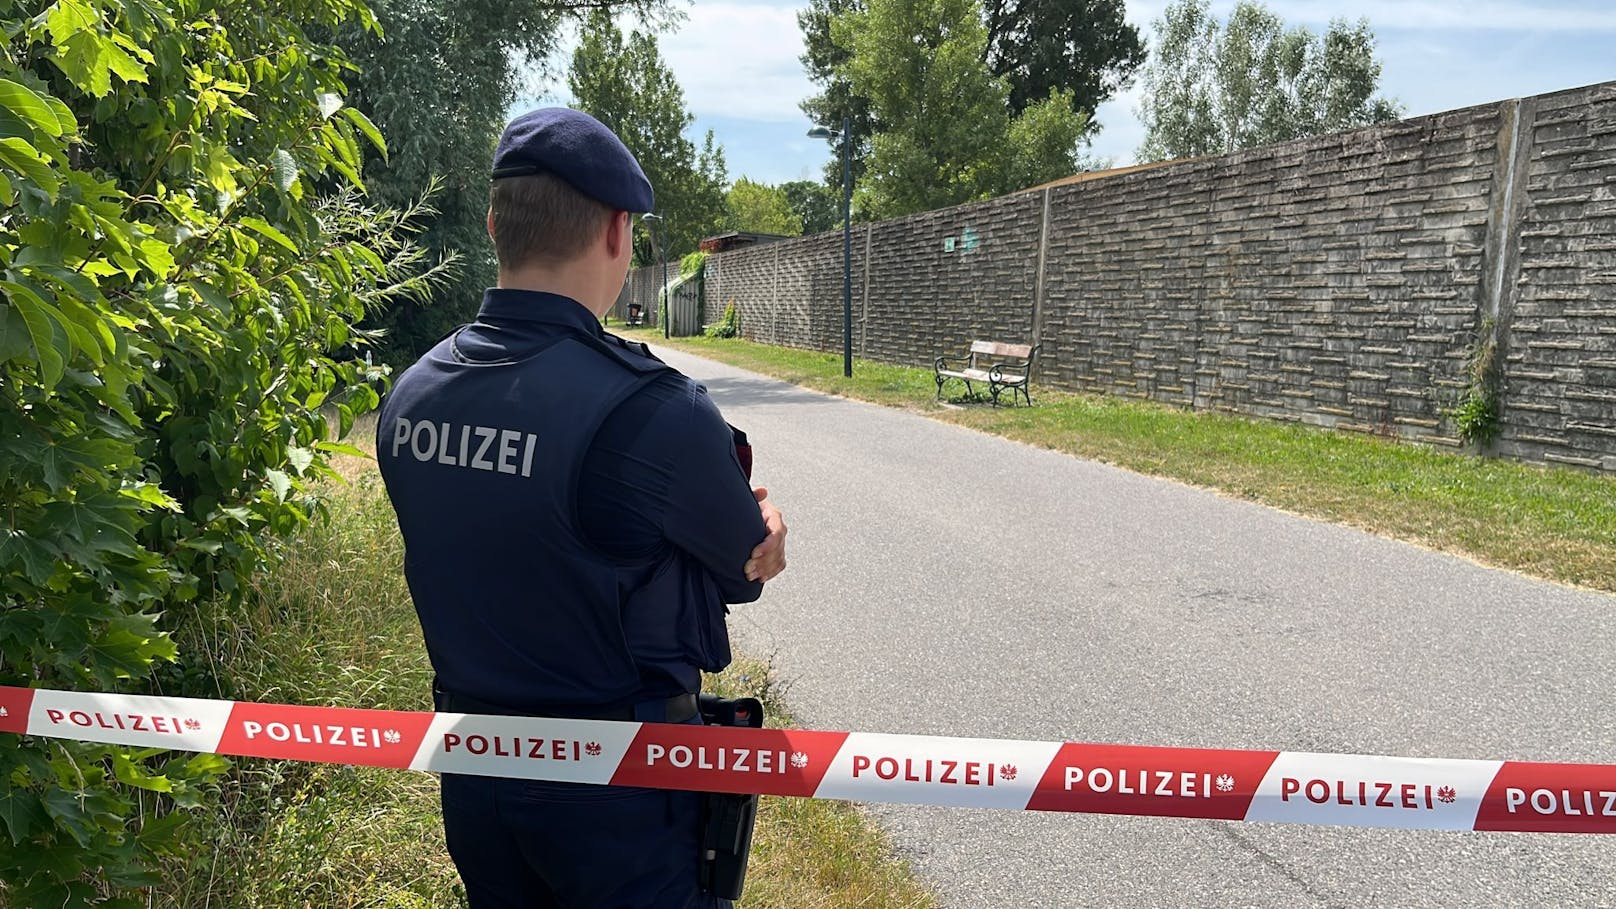 Nächster <a data-li-document-ref="100281073" href="https://www.heute.at/s/26-jaehriger-lag-in-wien-stunden-neben-toter-freundin-28-100281073">Mord</a>alarm in Wien: Ein erstochener Mann wurde in Wien-Brigittenau auf einer Parkbank gefunden. Die Polizei bestätigt den Leichenfund.